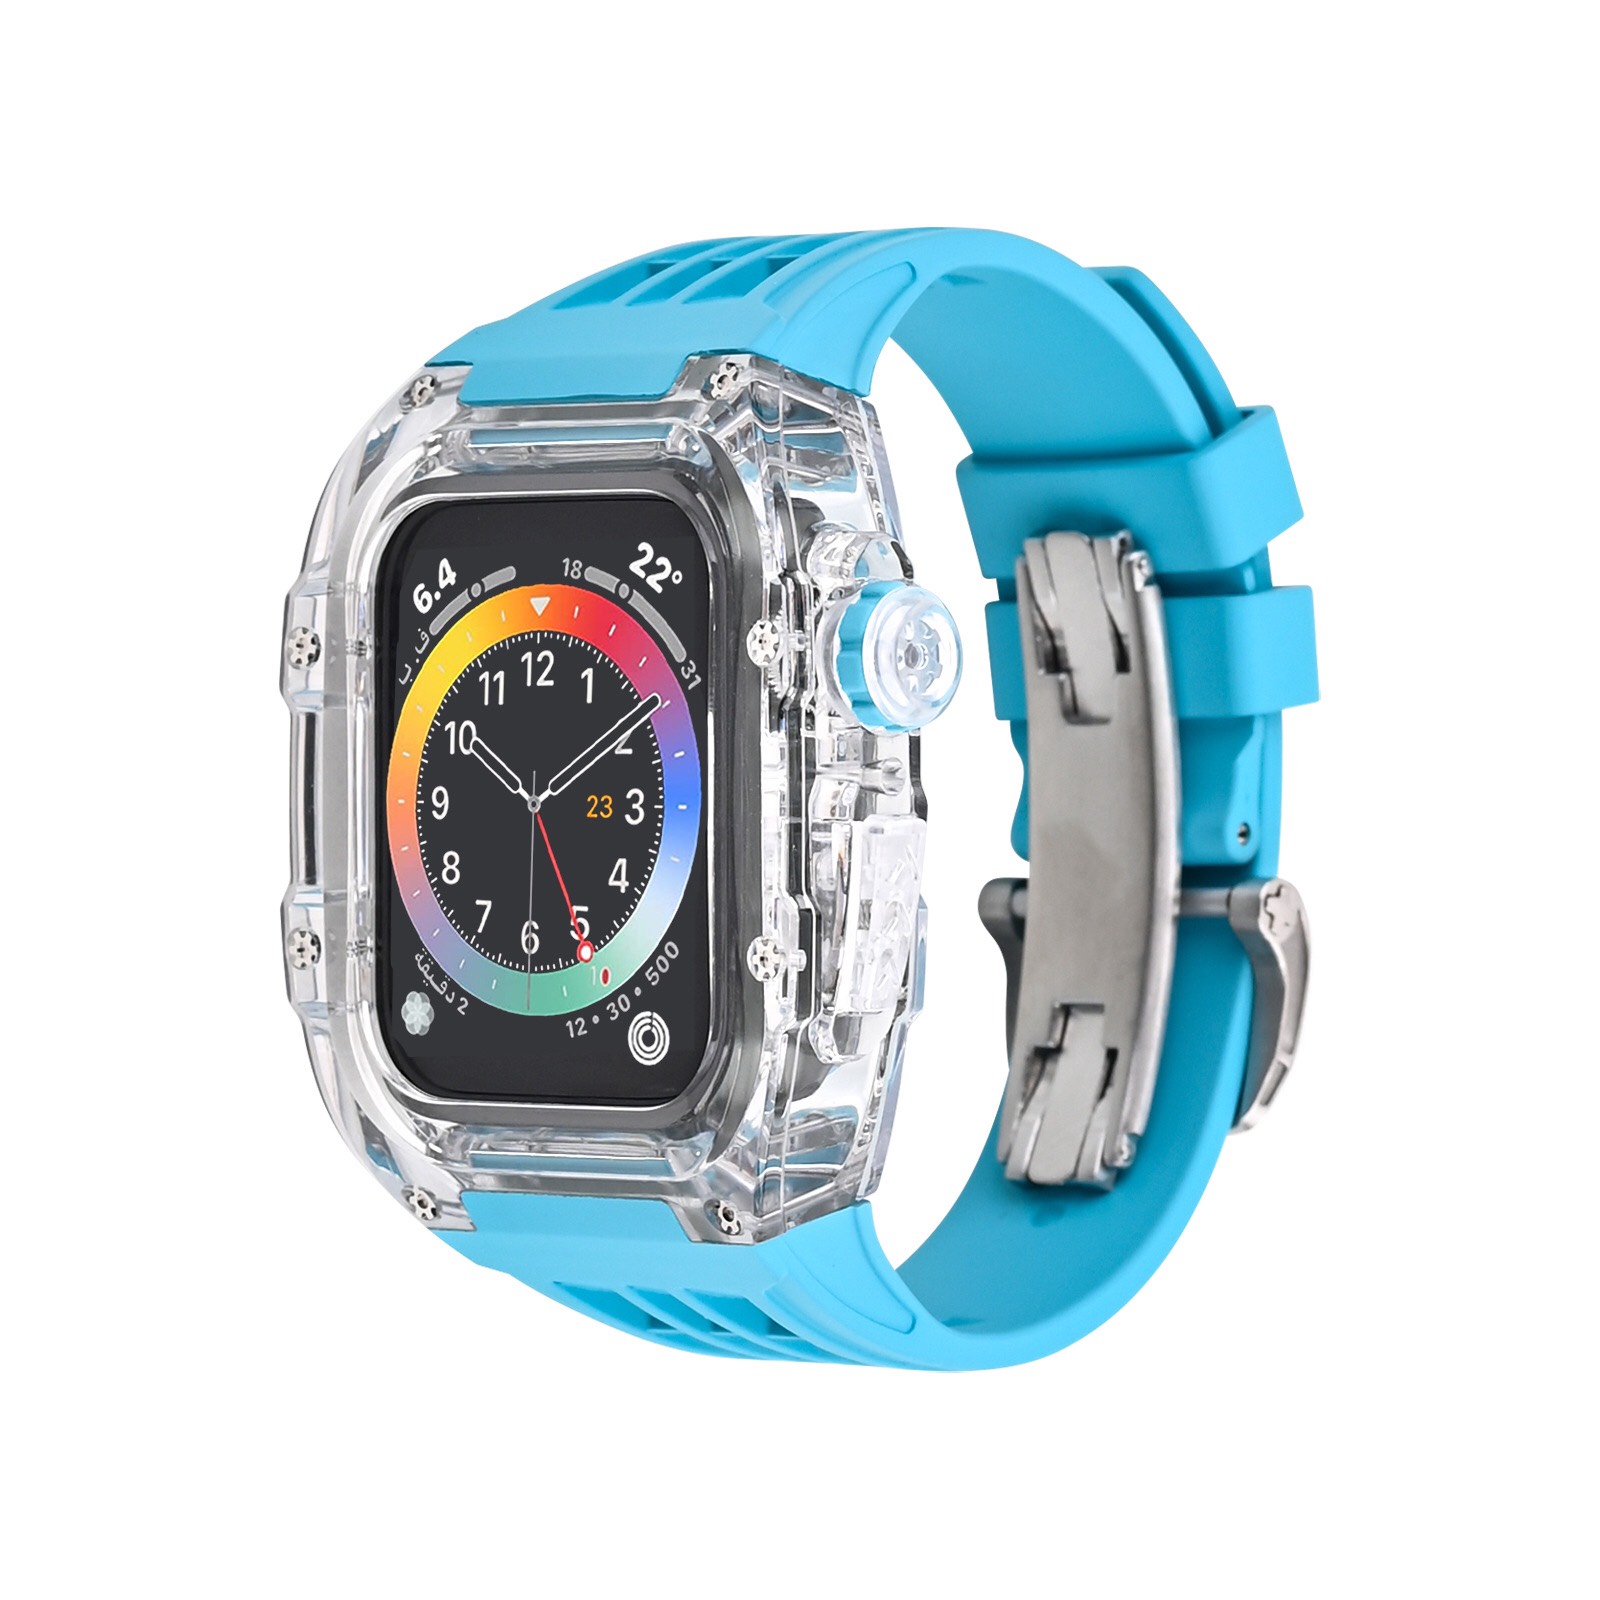 Bộ Vỏ Ốp Đồng Hồ Apple Watch 7 6 45mm Viền Trong Suốt, Dây Đeo Fluororubber Khóa Thép IWatch 